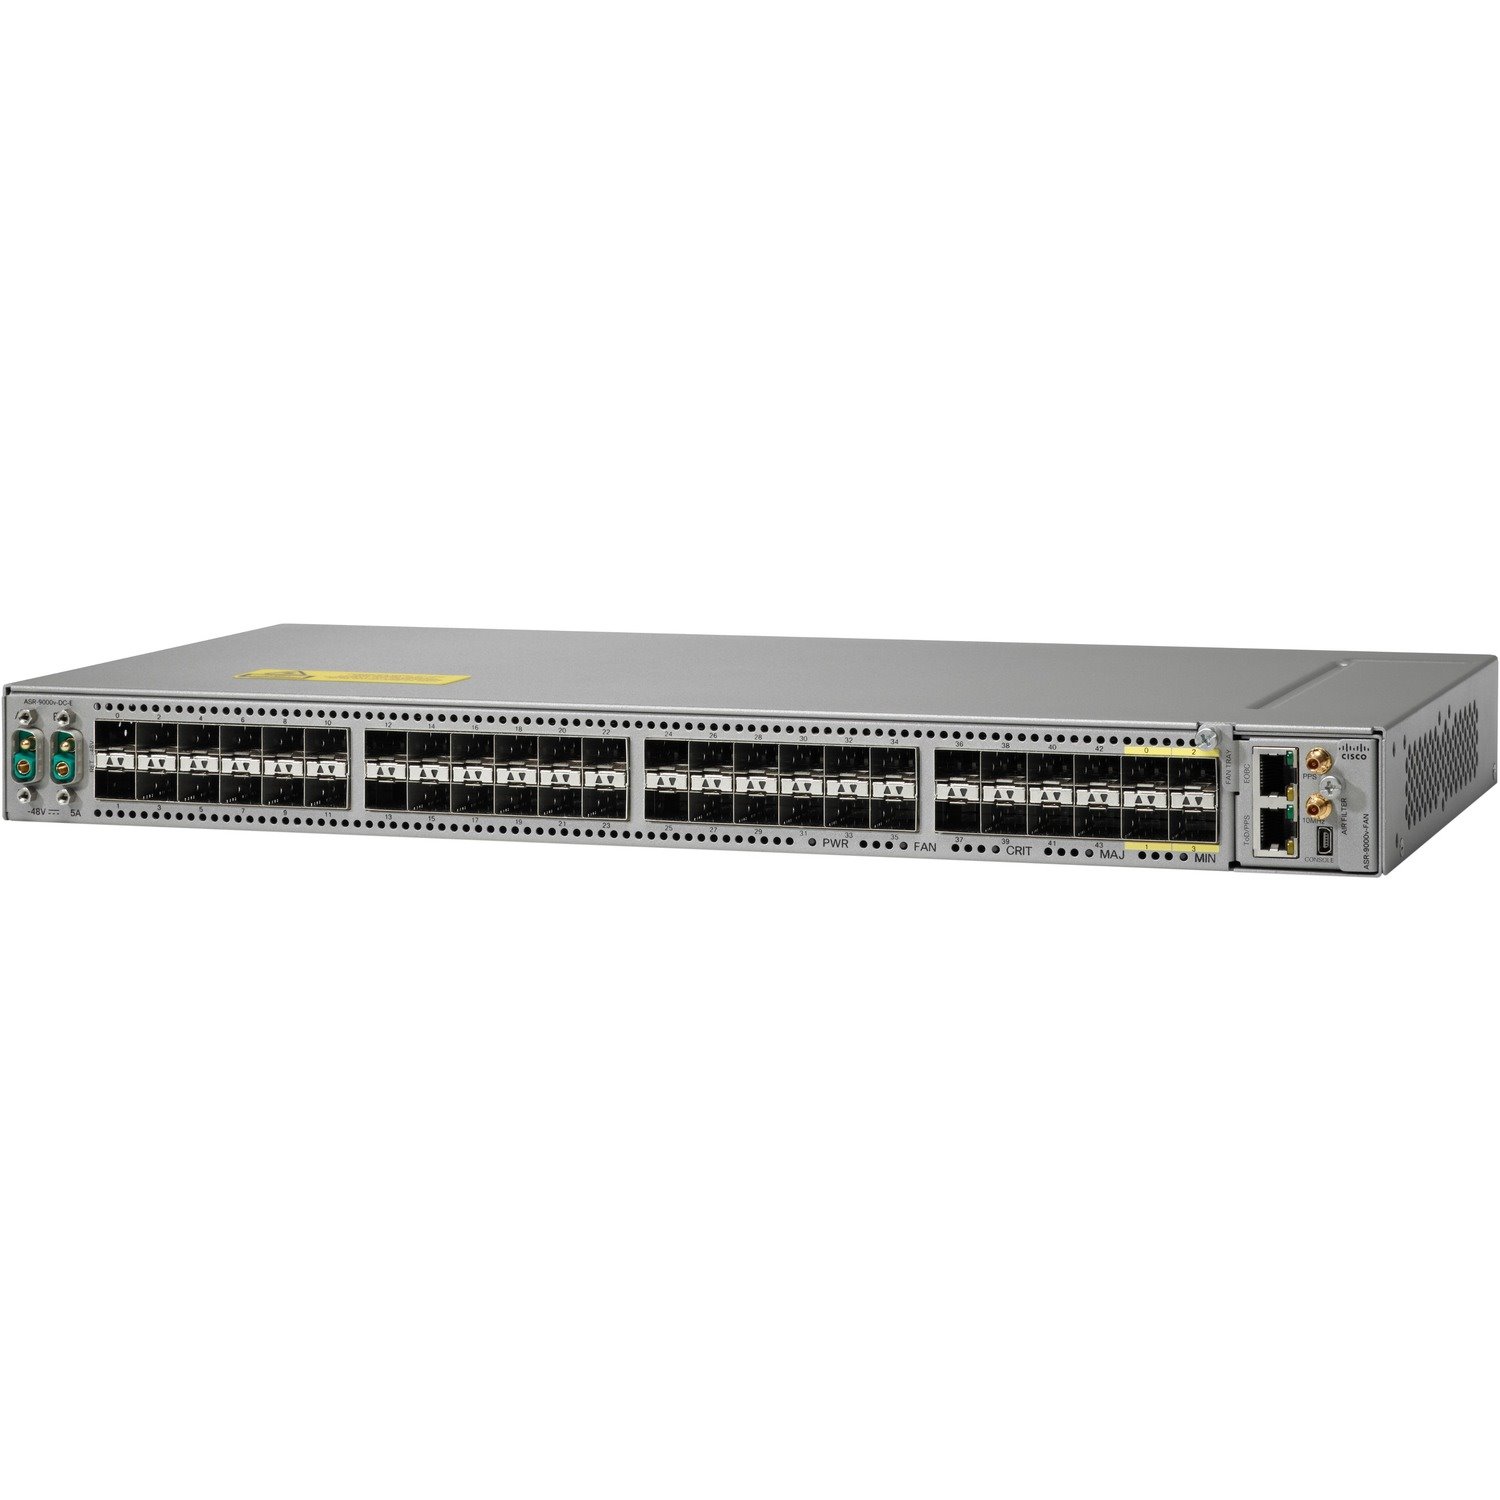 Cisco ASR 9000 ASR 9000v-V2 Router Chassis